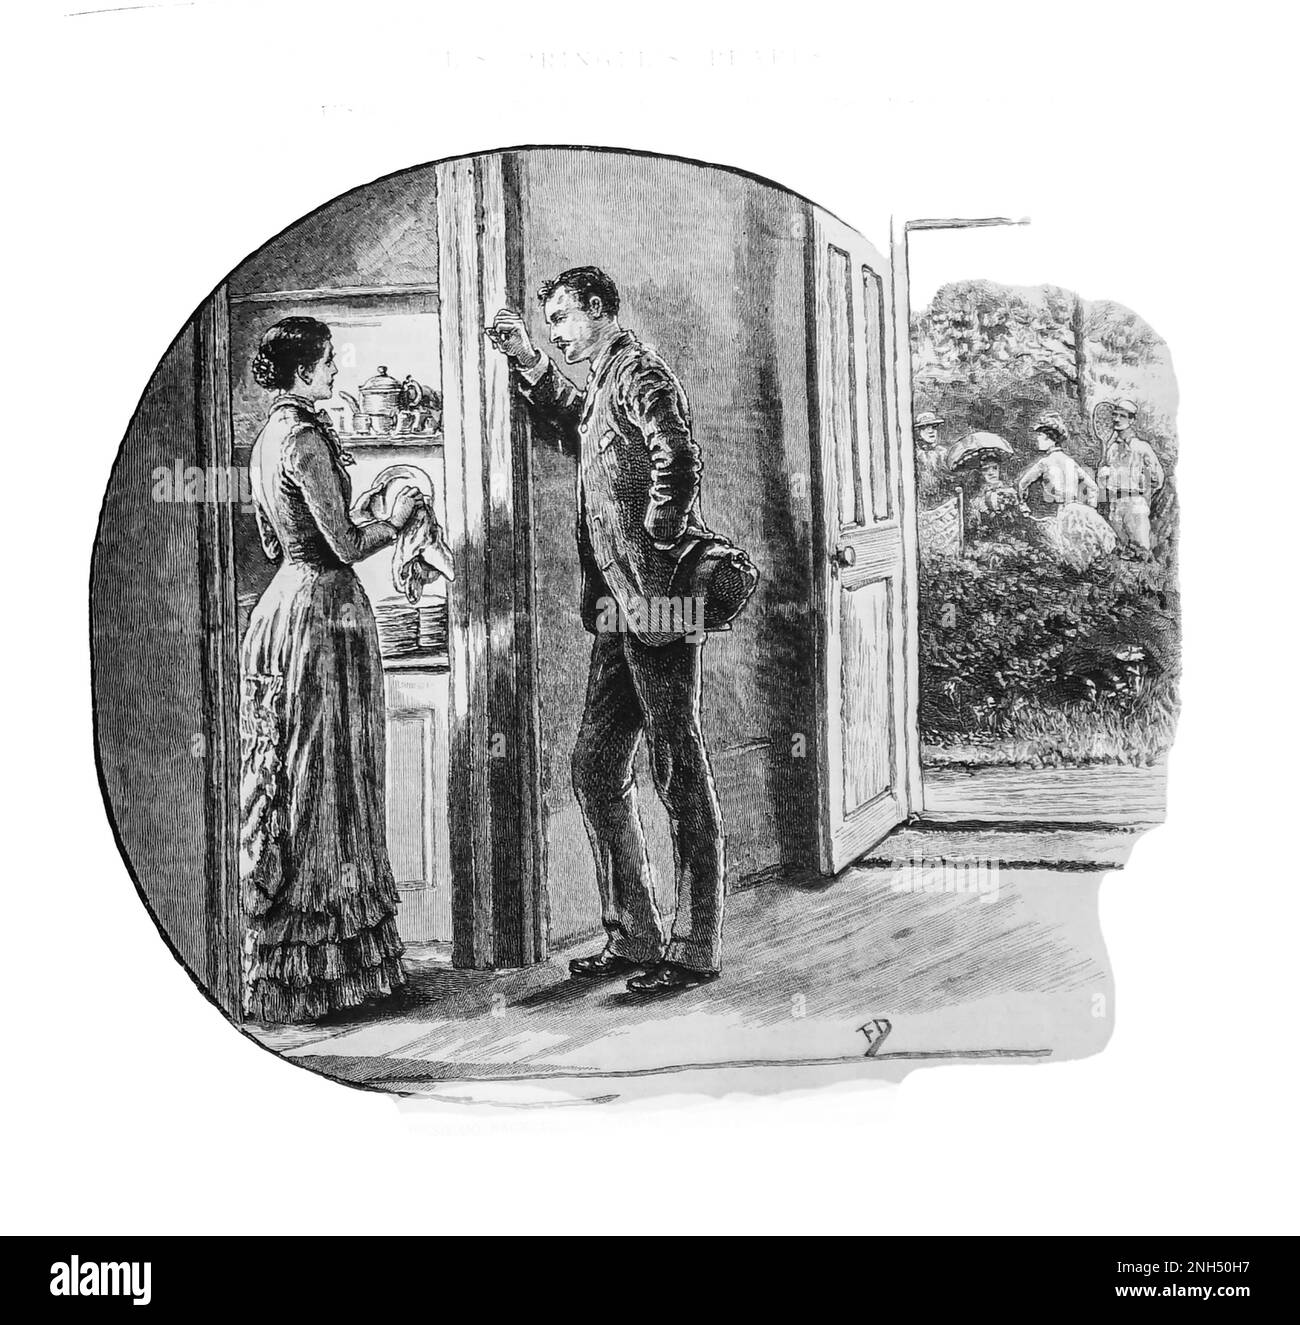 Une esquisse de 19th siècle d'un couple, elle sèche des plats dans la cuisine, il s'est penché sur la porte, dans une conversation intense, du Livre des filles de 1888. Banque D'Images